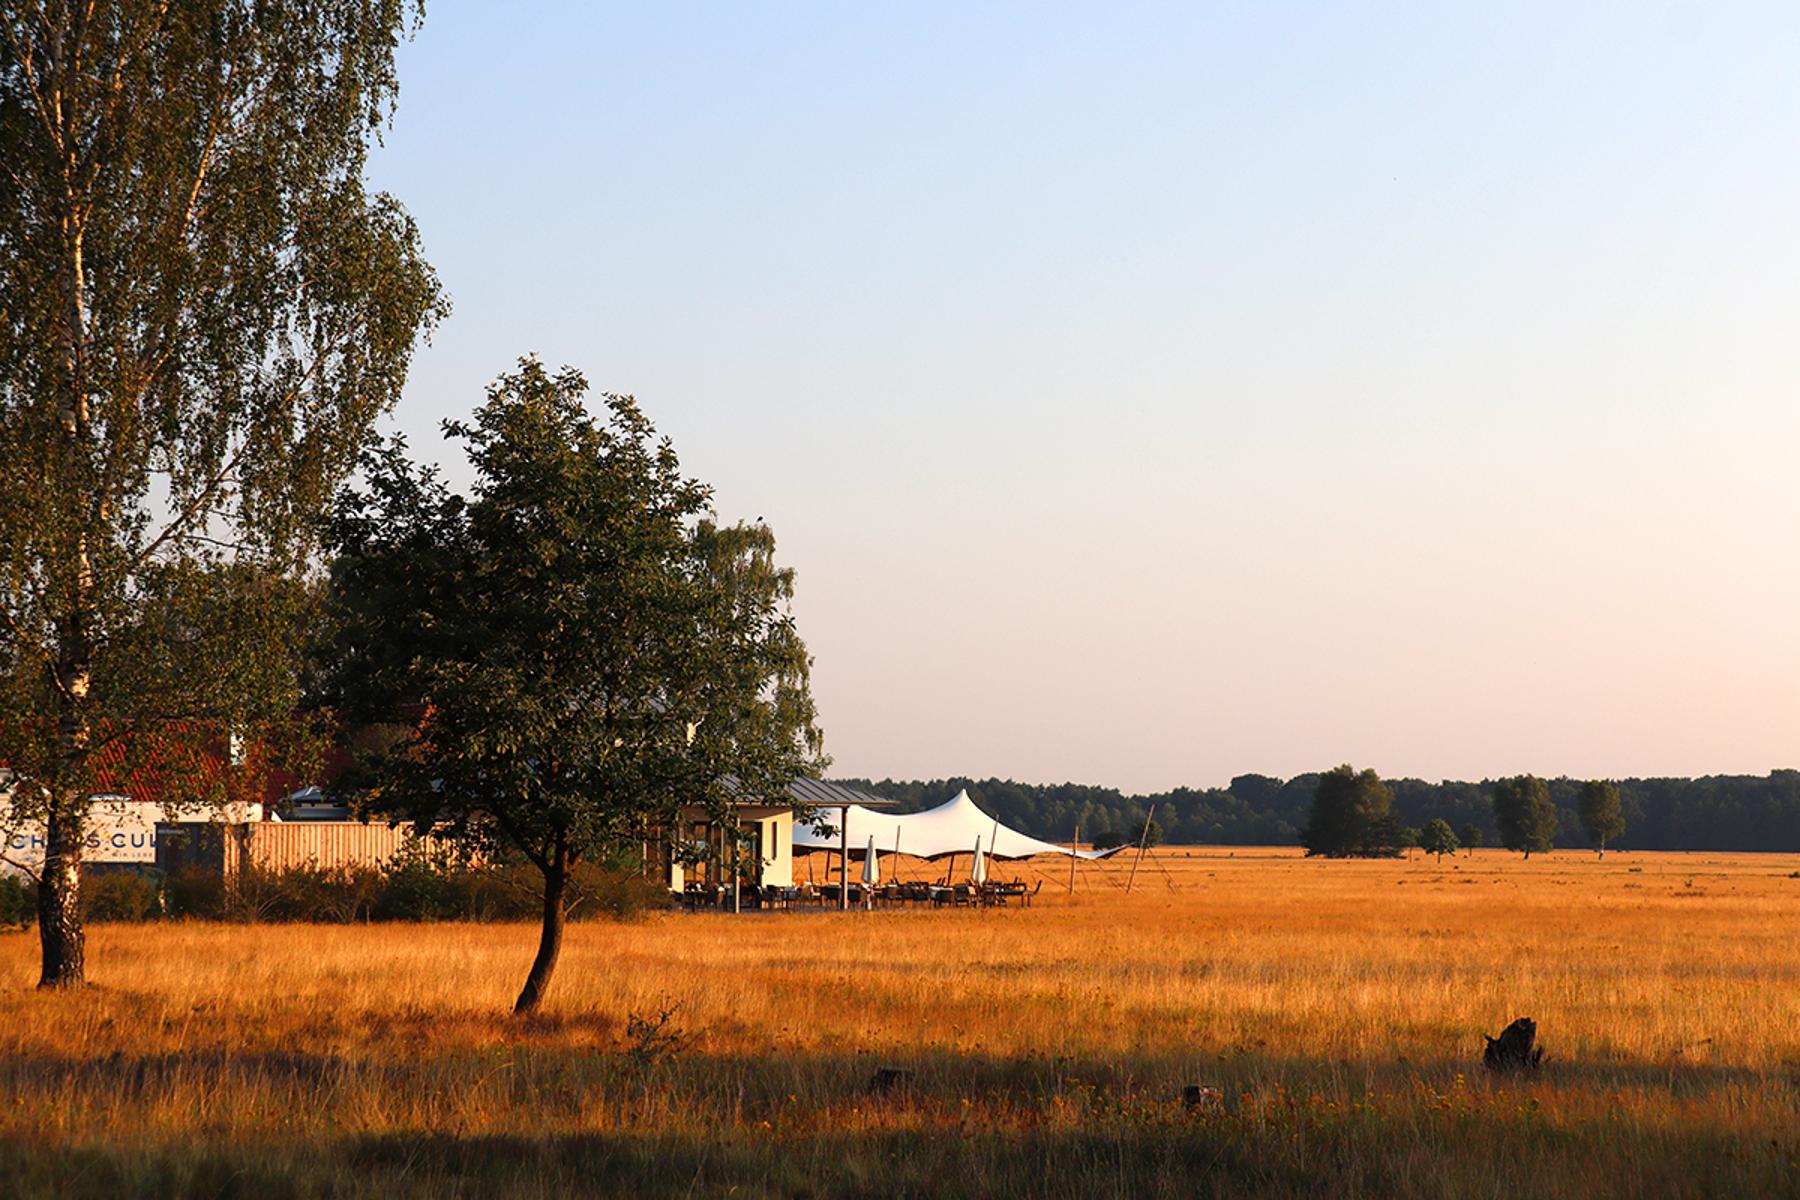 Das Camp Reinsehlen, heute ein geschütztes Gebiet mit der größten zusammenhängenden Sandmagerrasenfläche Niedersachsens, besitzt eine lange und sehr wechselhafte Vergangenheit als Militärflugplatz, Flüchtlingslager und Truppenübungsgelände.